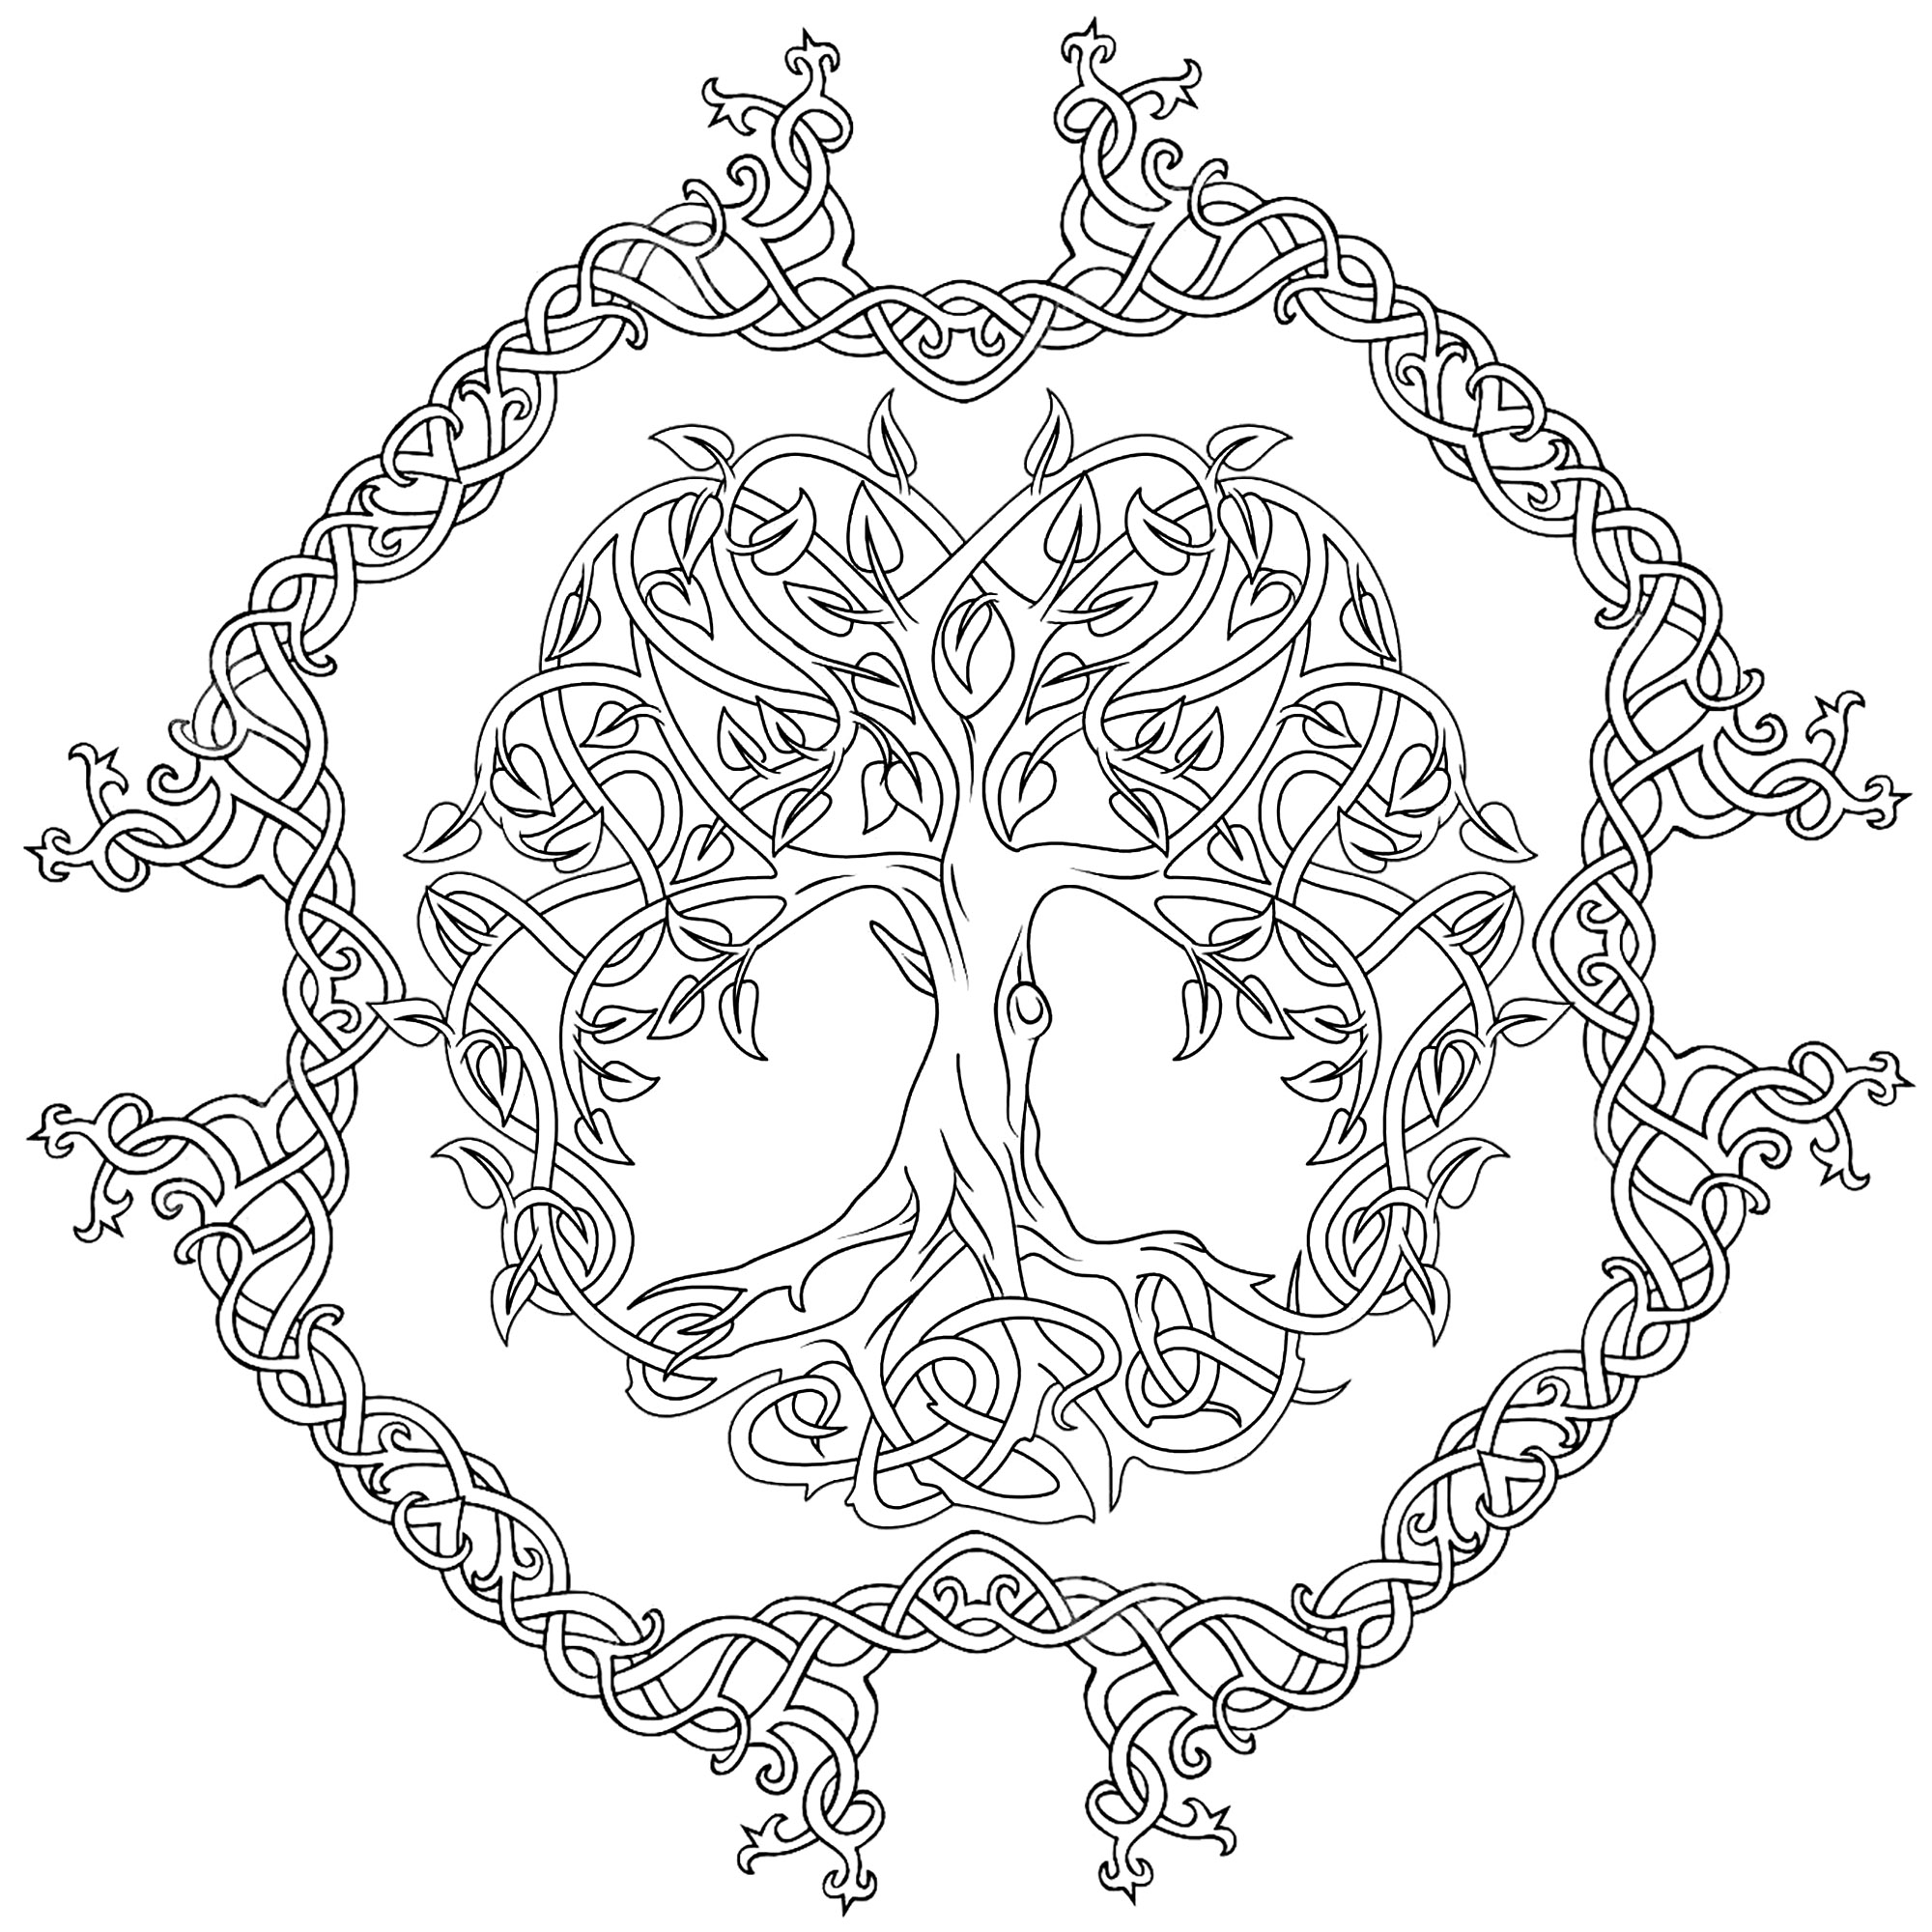 Árvore da vida com contorno de motivos celtas. A árvore da vida celta representa o conceito das forças da natureza que convergem para criar harmonia.